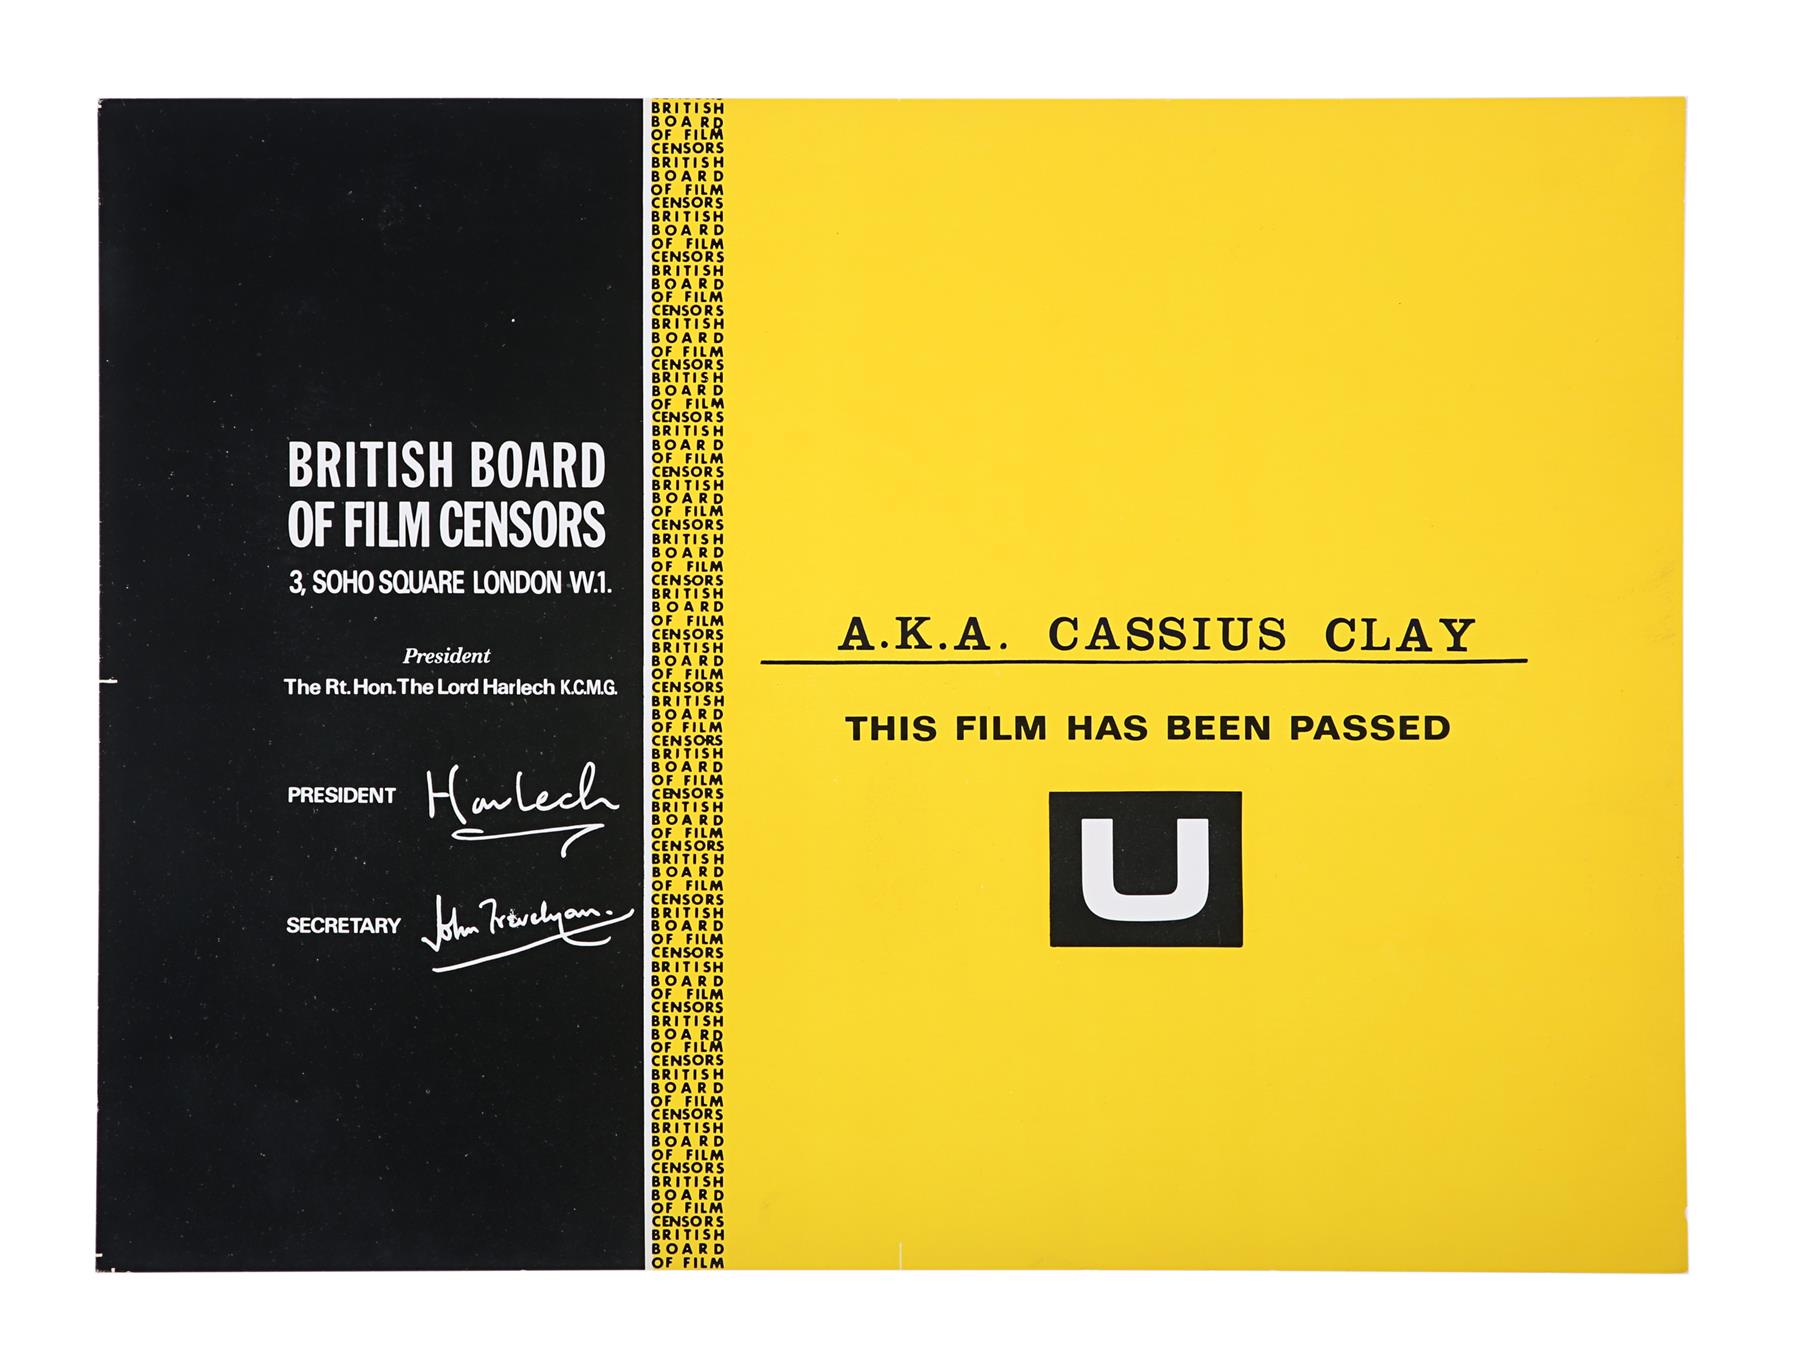 A.K.A. CASSIUS CLAY (1970) - BBFC Certificate, 1970